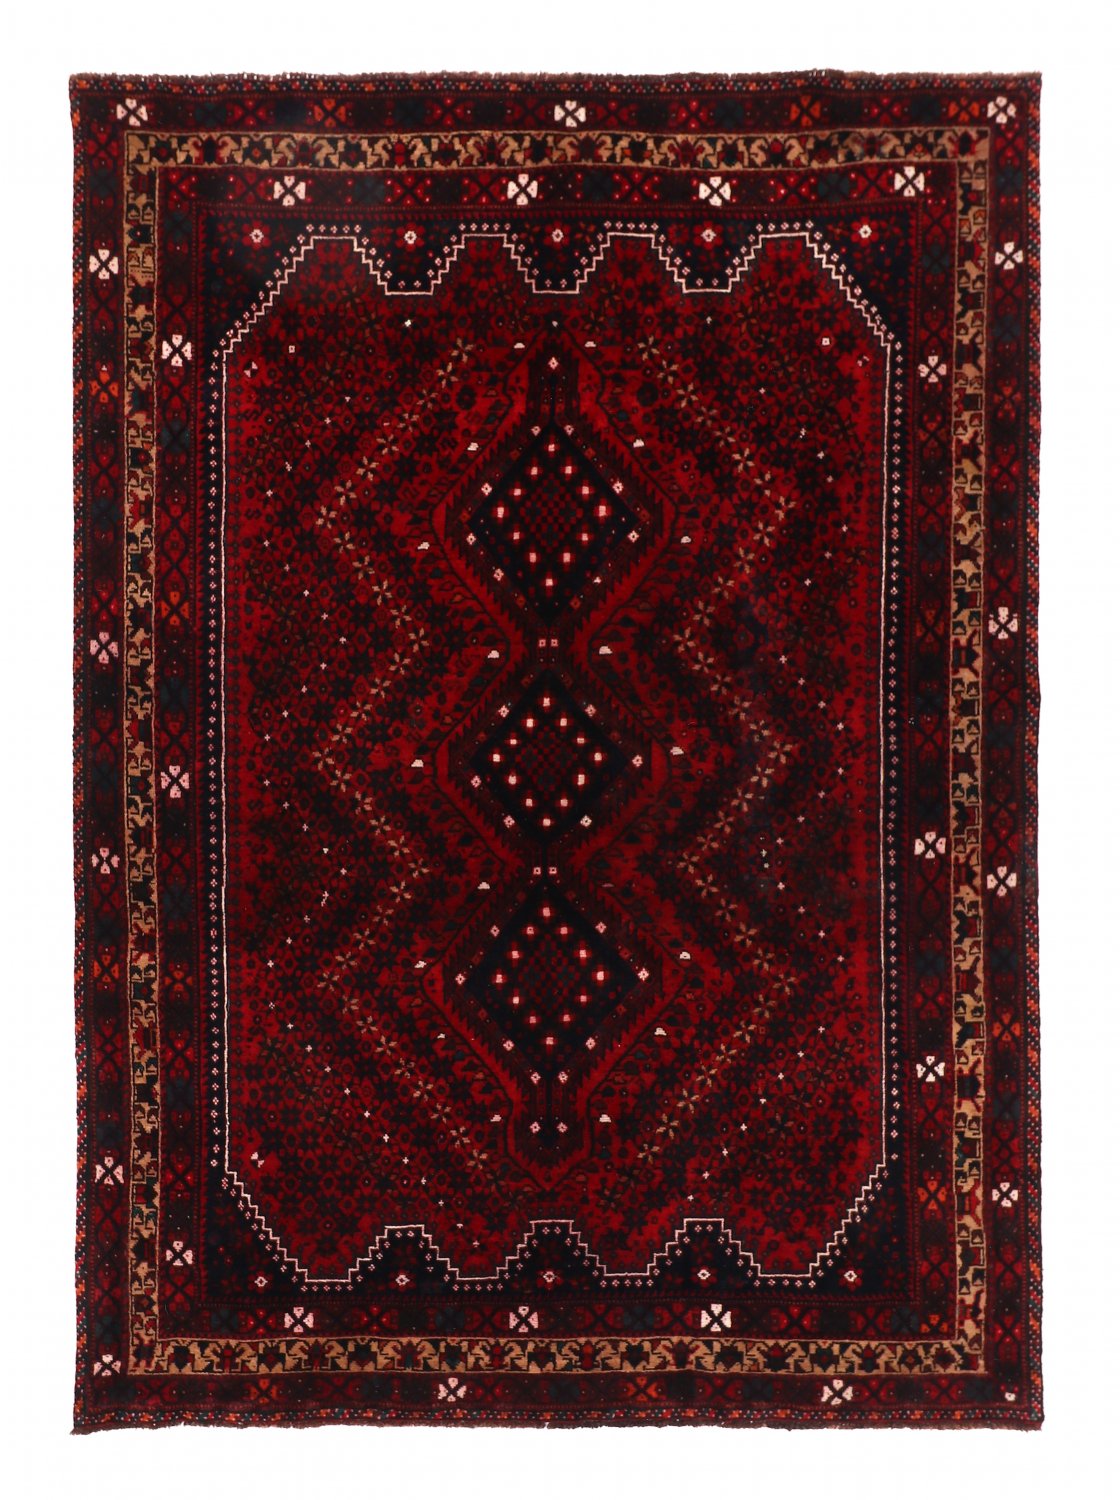 Persian rug Hamedan 282 x 205 cm